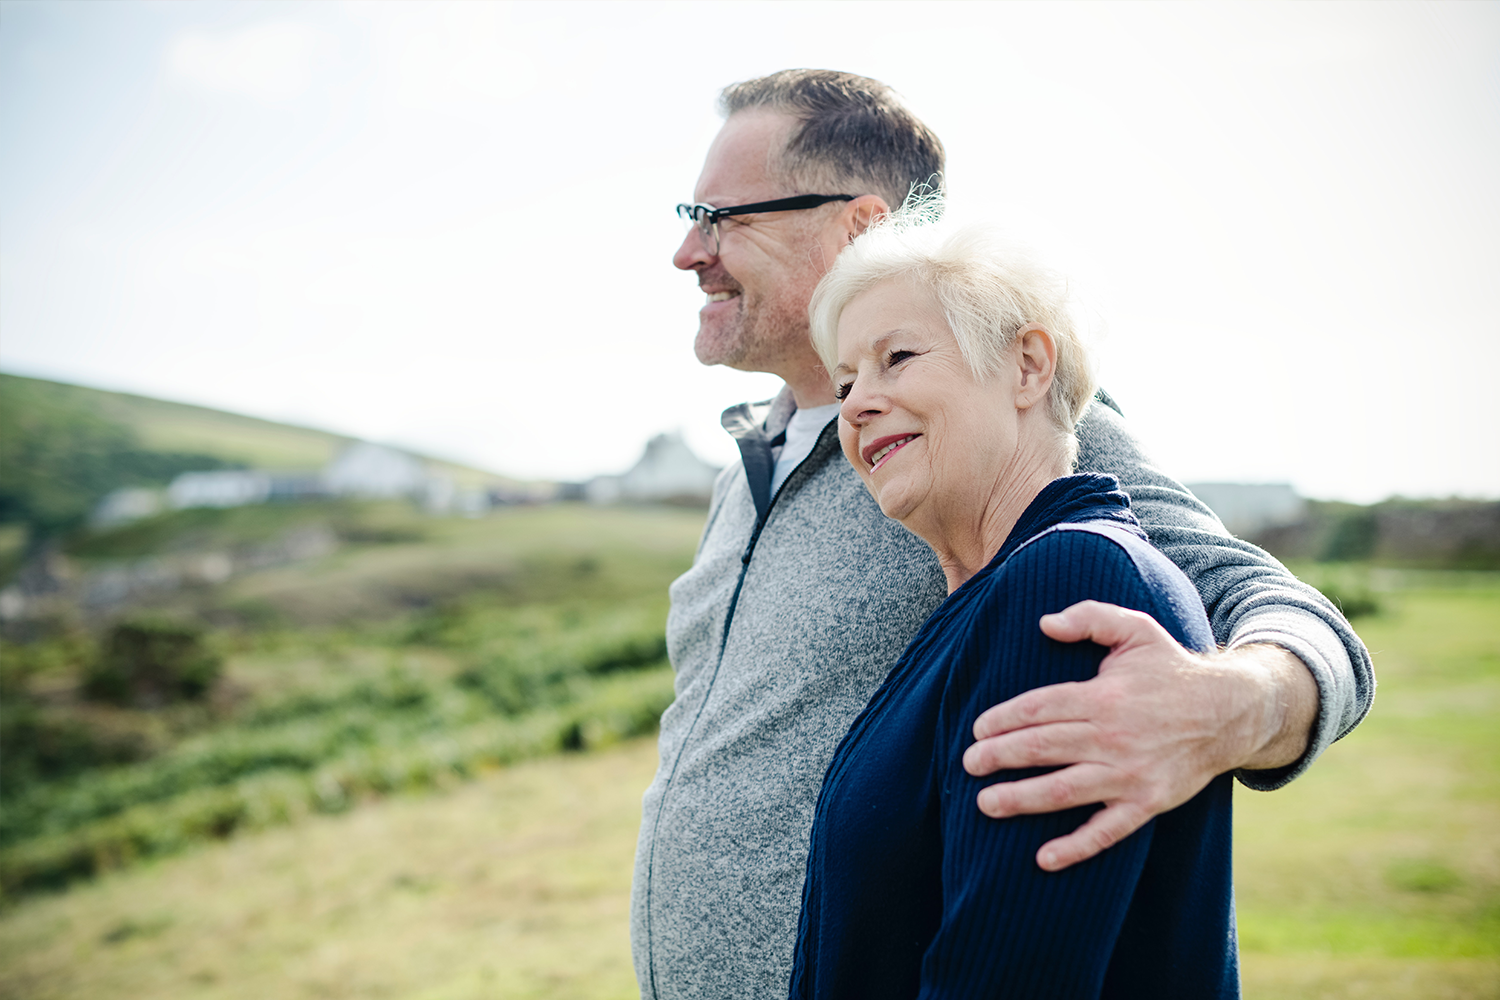 EU-Forschungsprojekt zur altersabhängigen Makuladegeneration - Änderung des Lebensstils schützt vor Erblindung